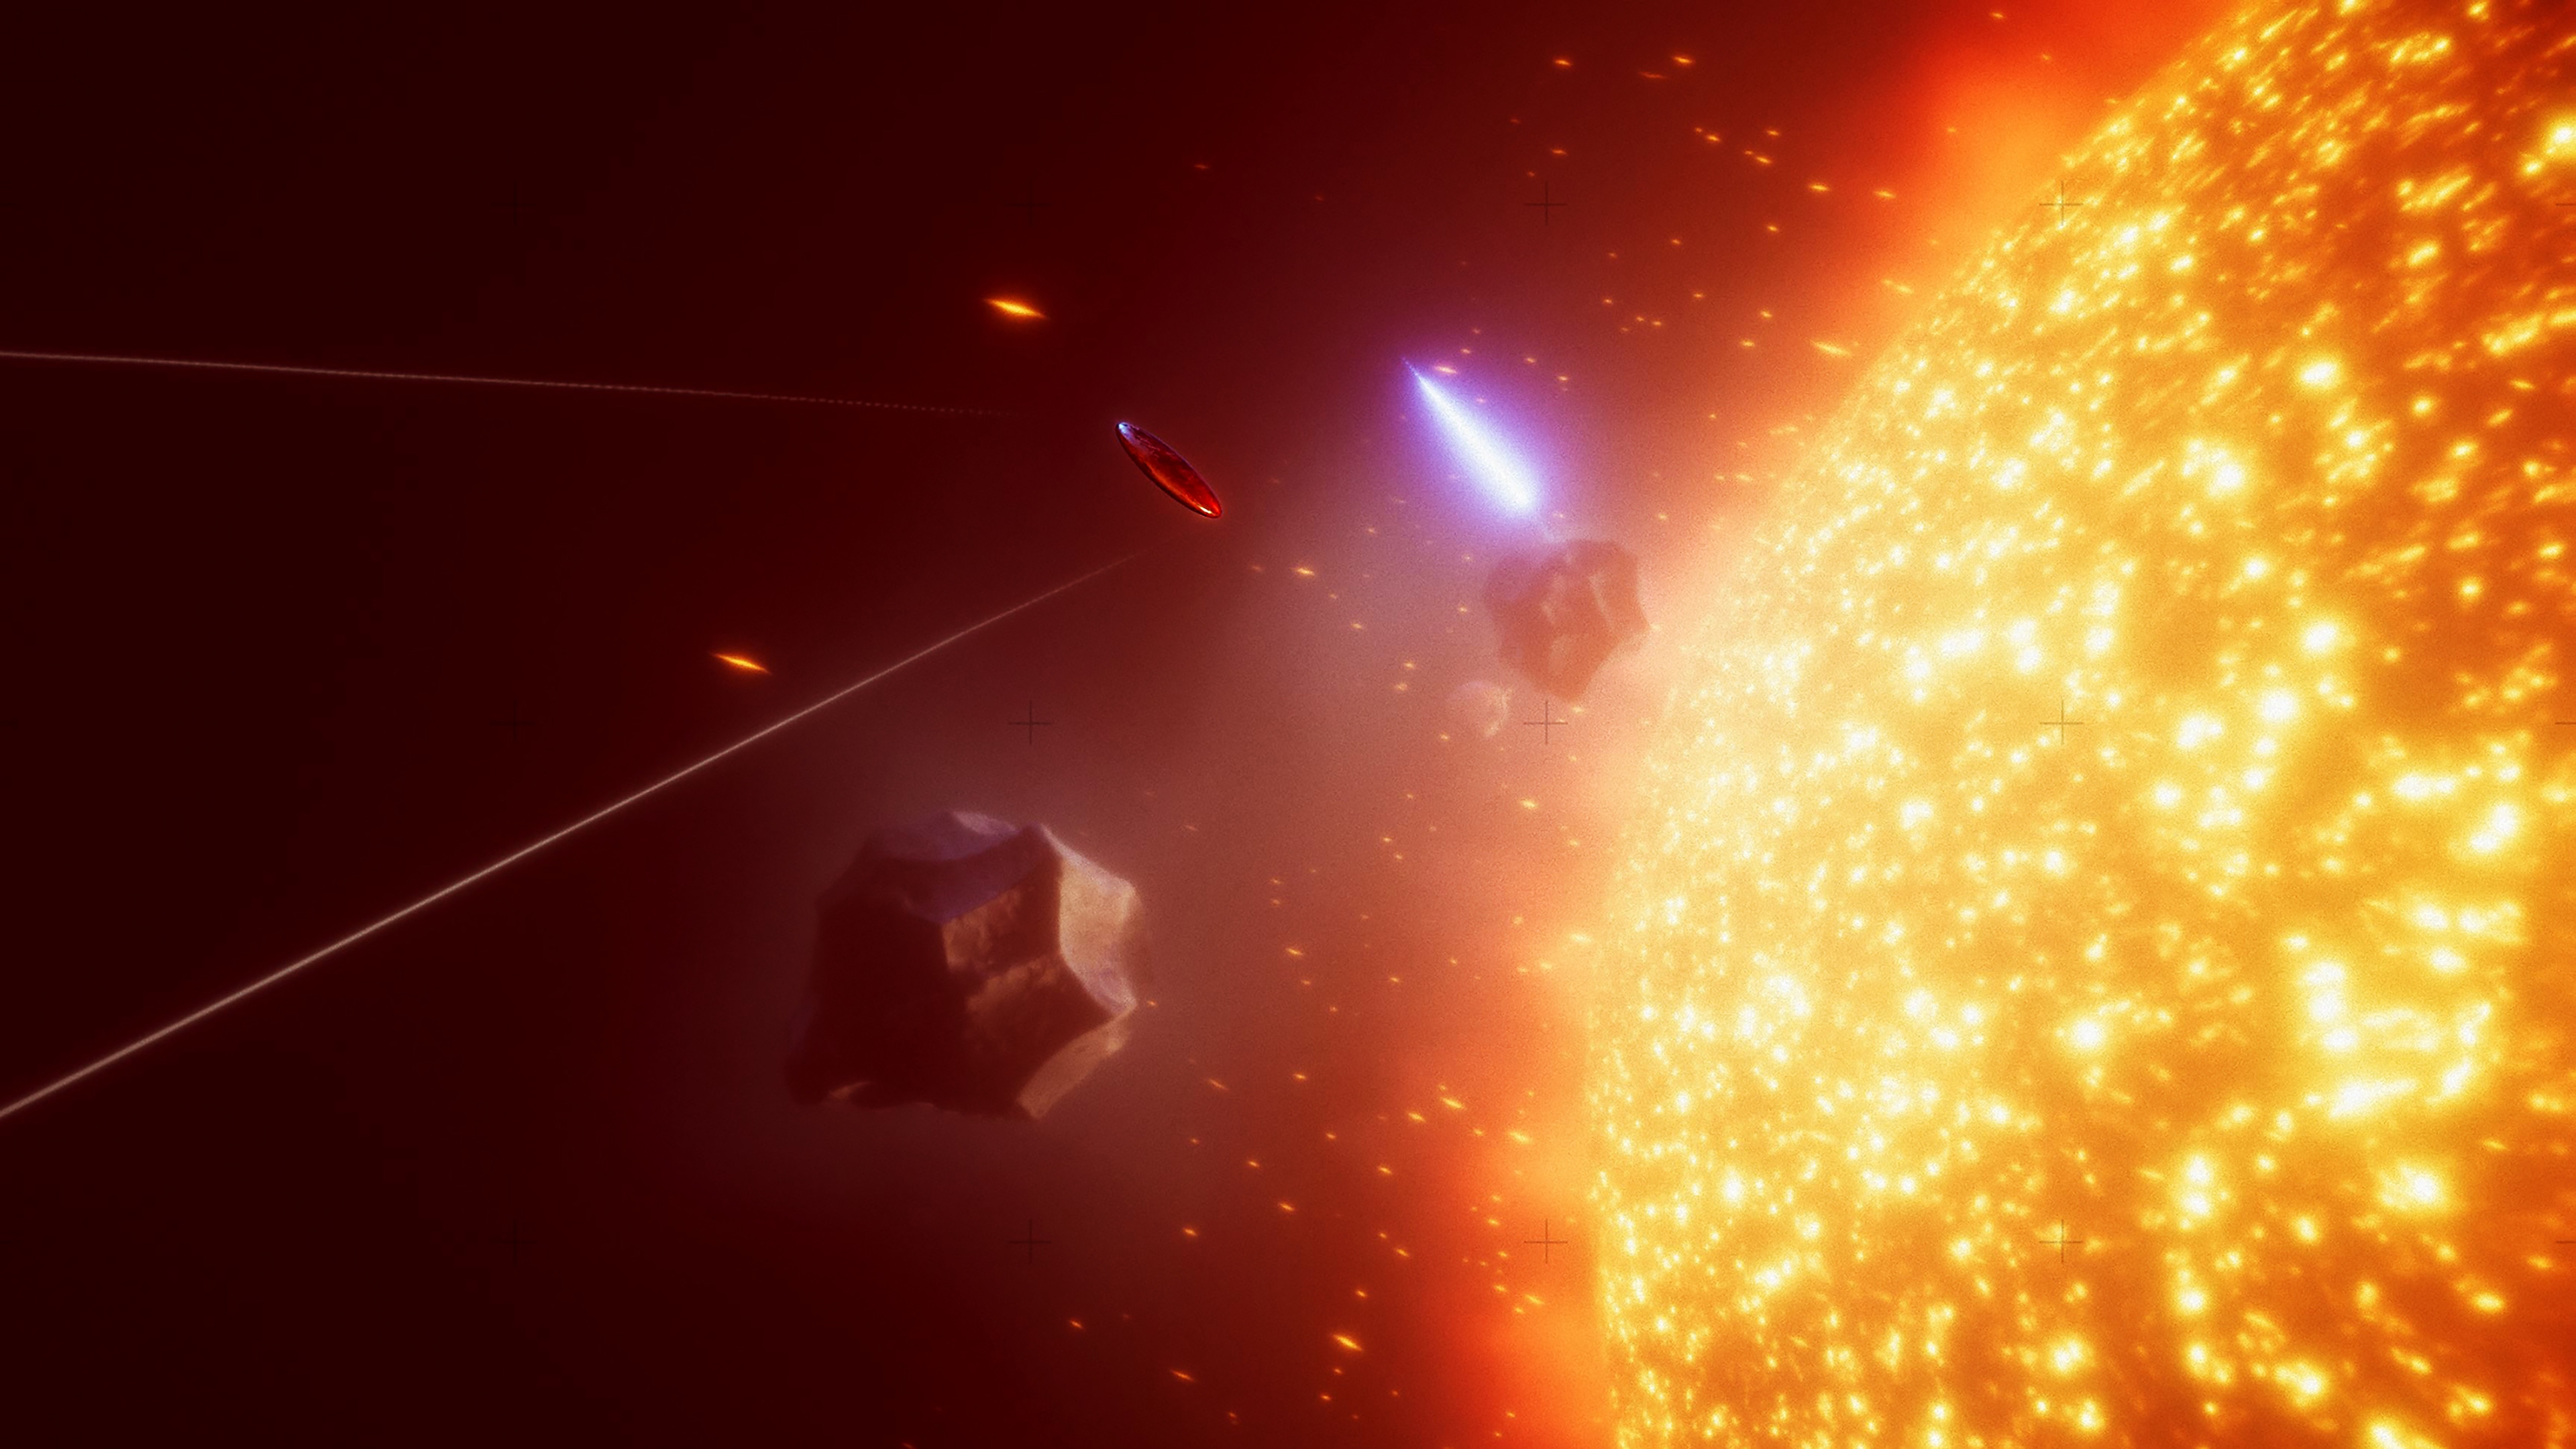 Captura de pantalla de Exo One que muestra un objeto volador cerca de una entidad con forma de estrella